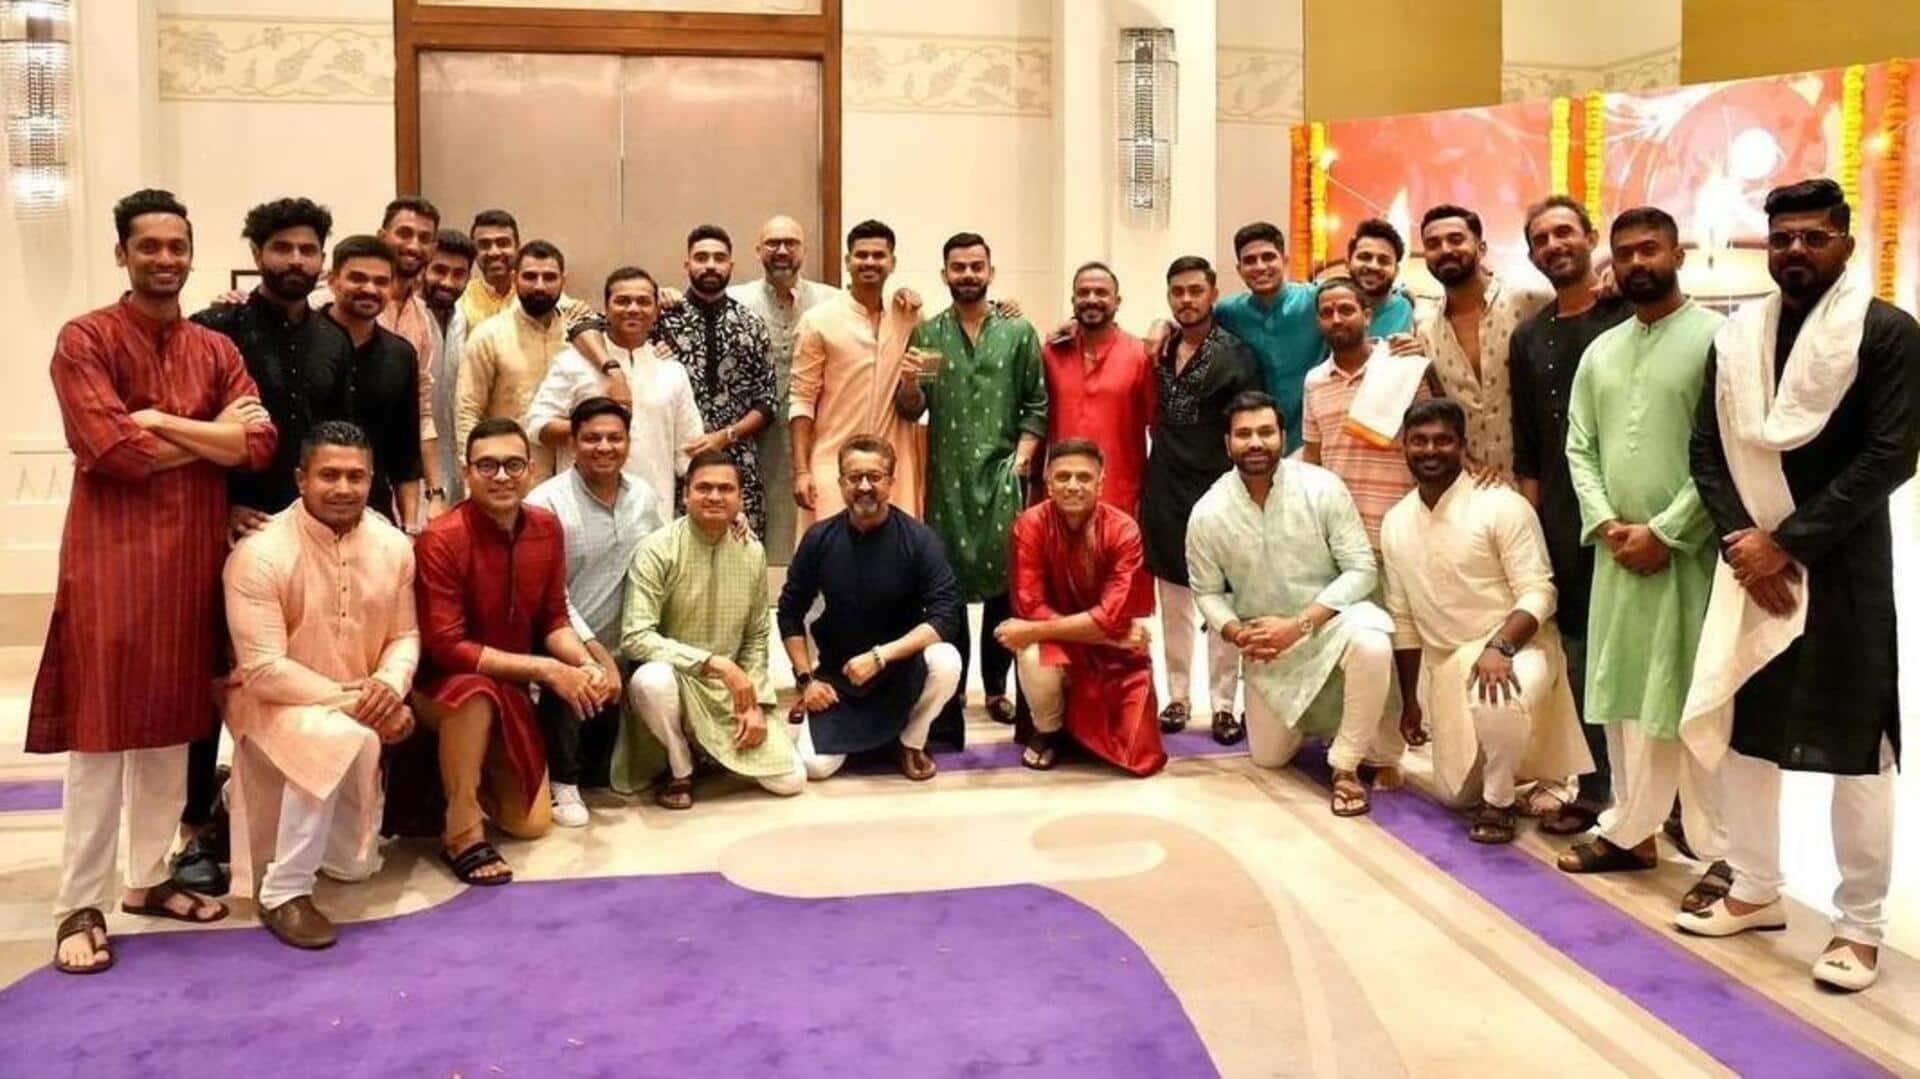 क्रिकेट जगत के इन सितारों ने अलग-अलग अंदाज में दी दिवाली की शुभकामनाएं 